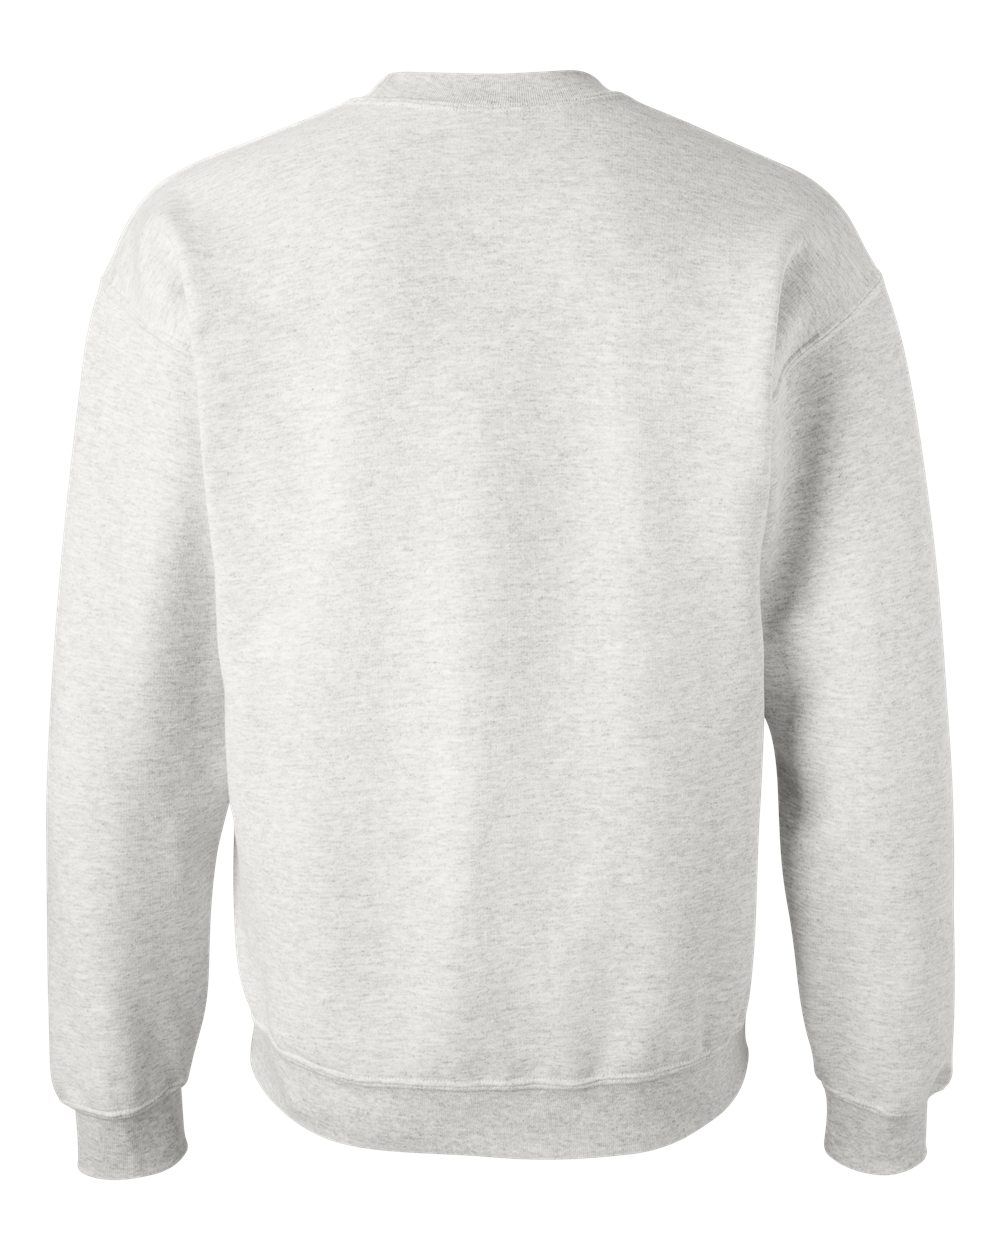 Fleece DryBlend Crewneck Sweatshirt - image 3 of 5